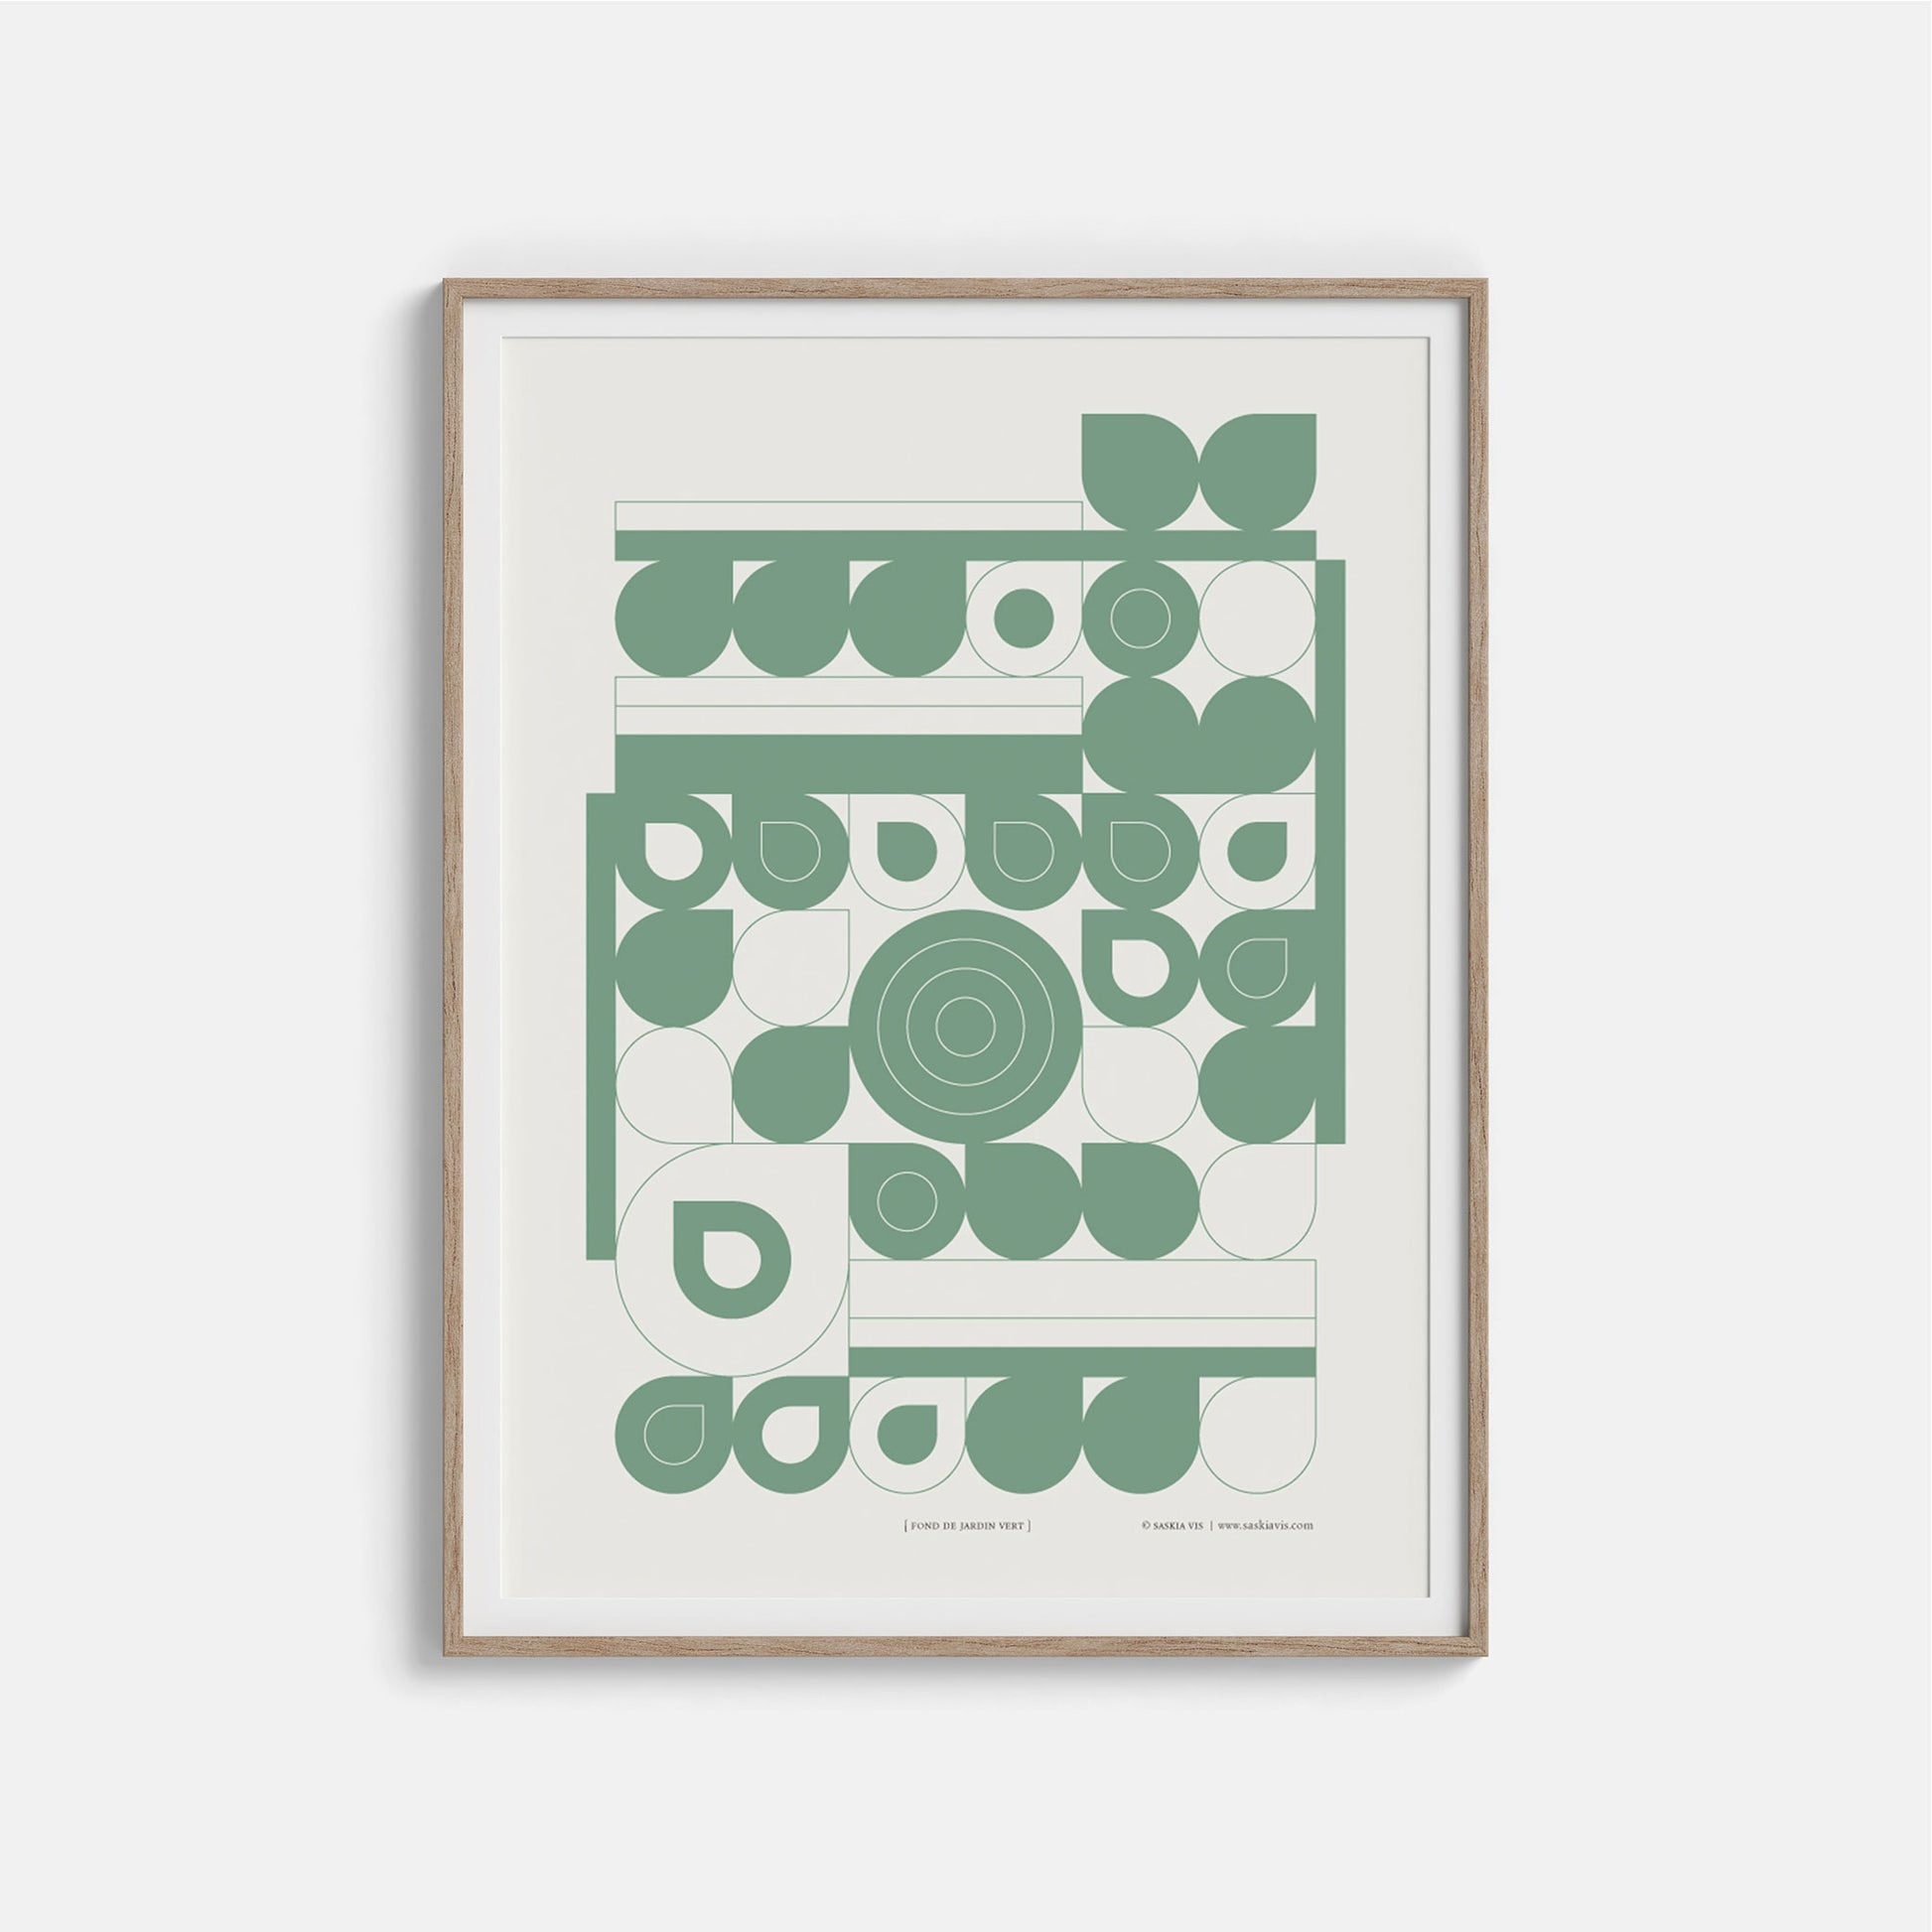 Productafbeelding, poster "fond de jardin vert", ingelijst in een houten frame, hangend aan een creme gekleurde wand